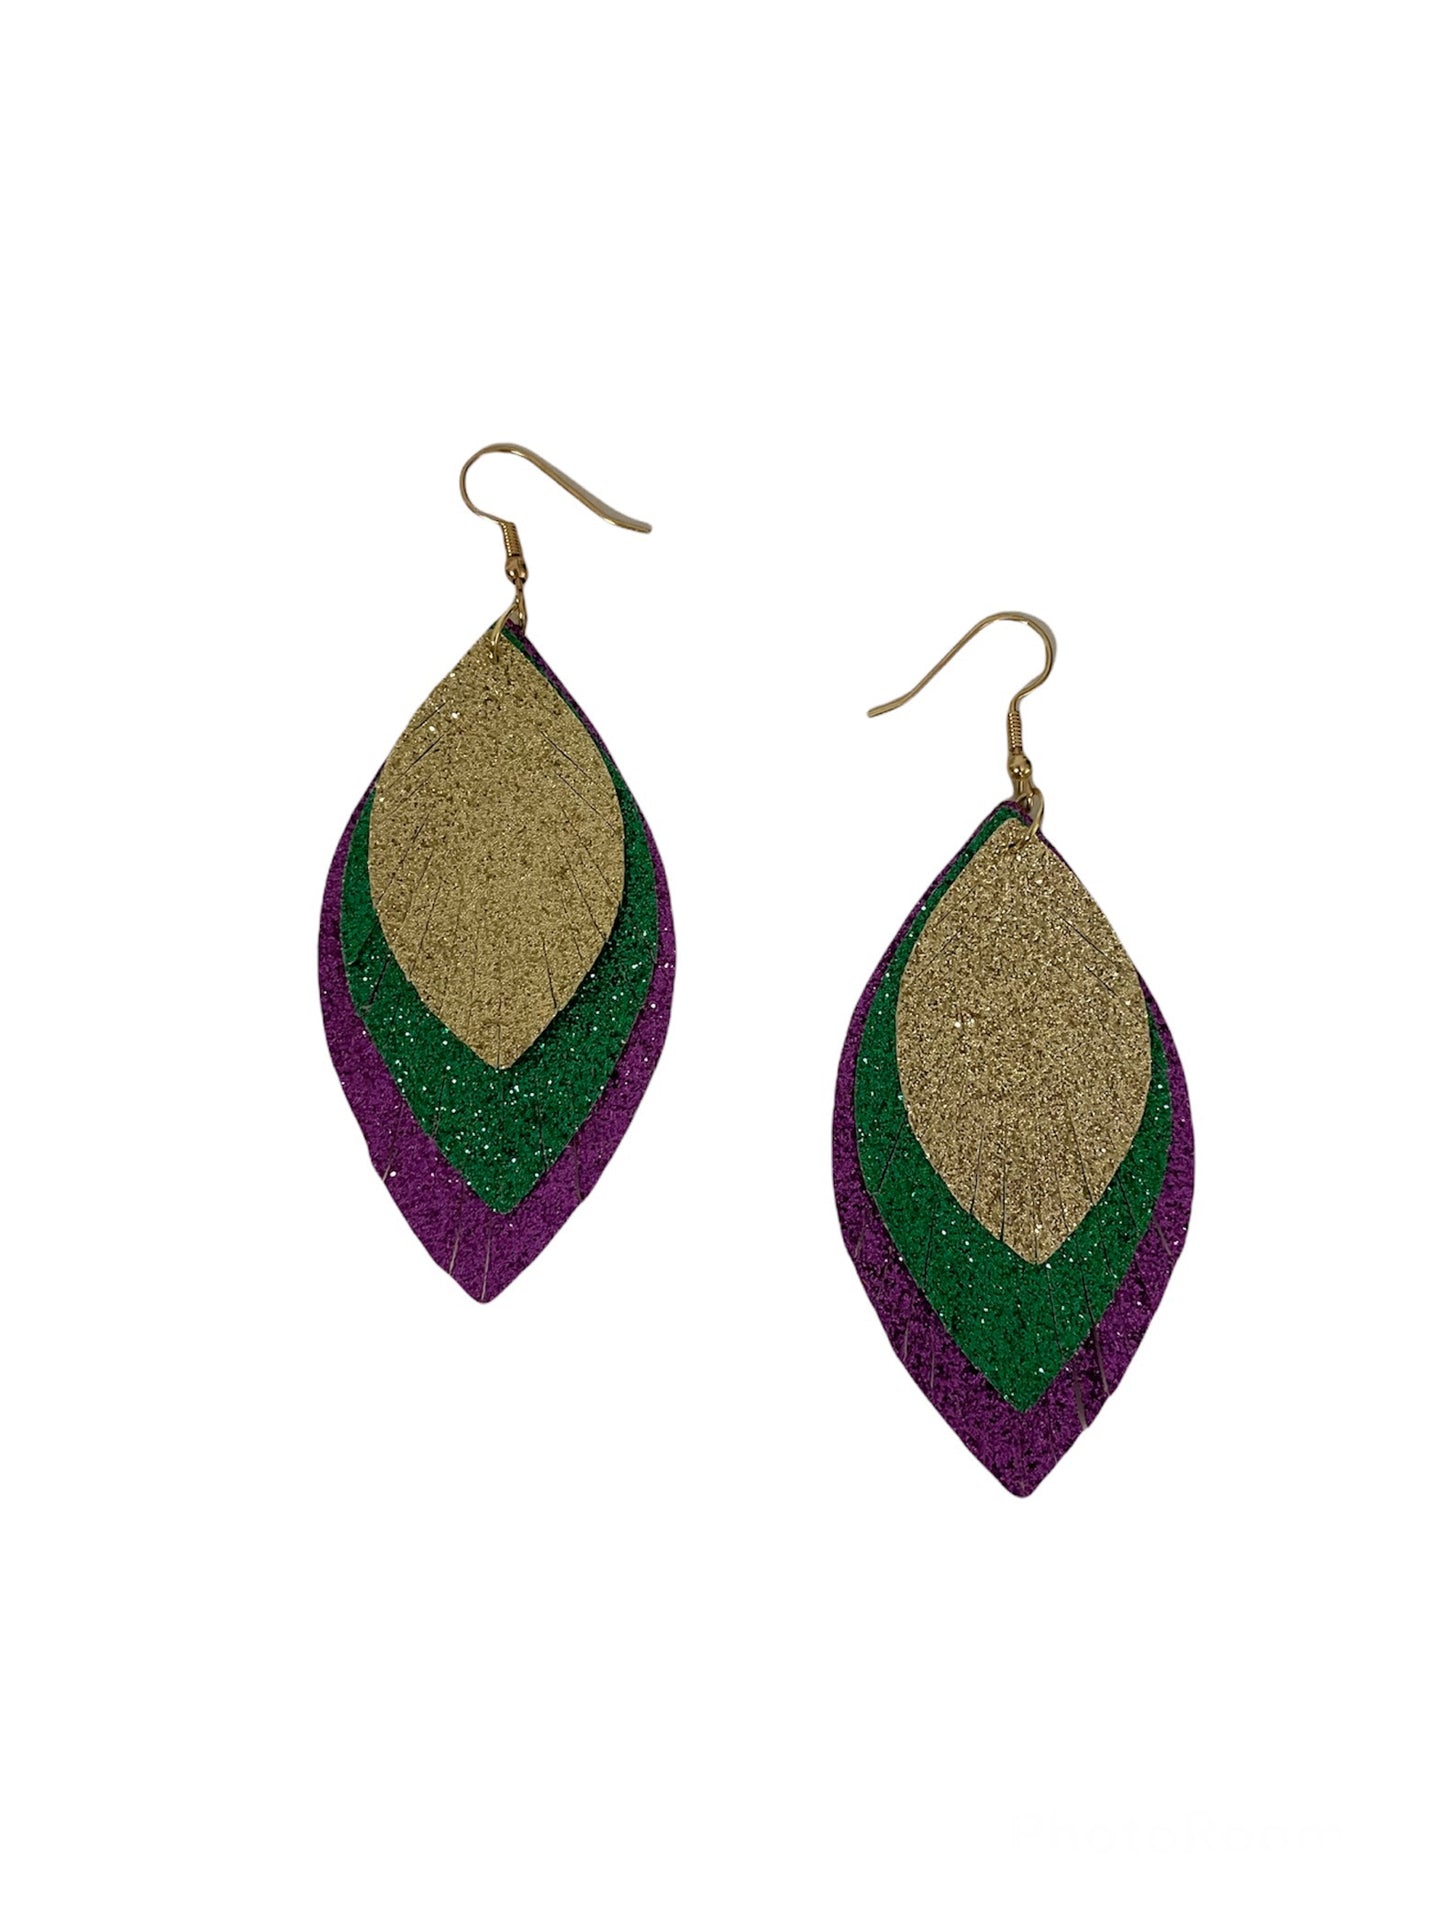 Gold, Green and Purple Teardrop Earrings